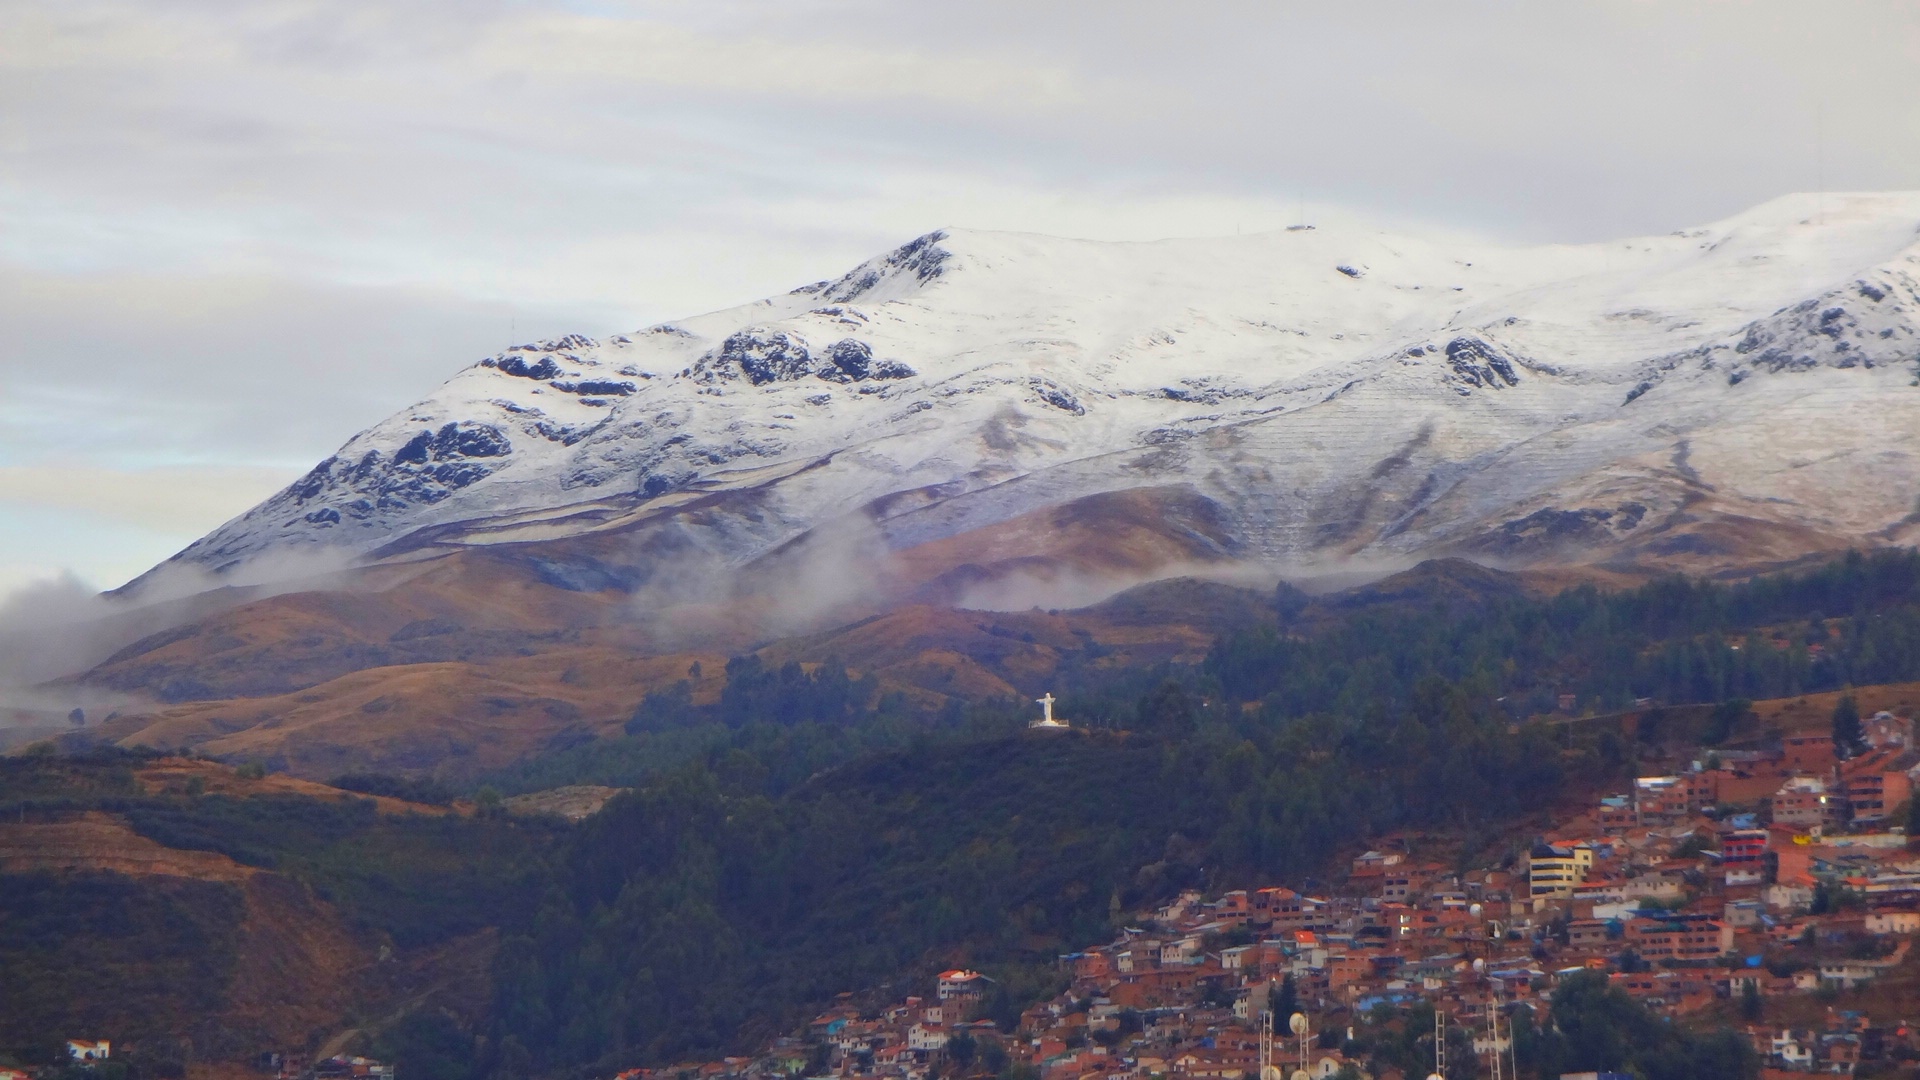 Cusco dawned snowy!